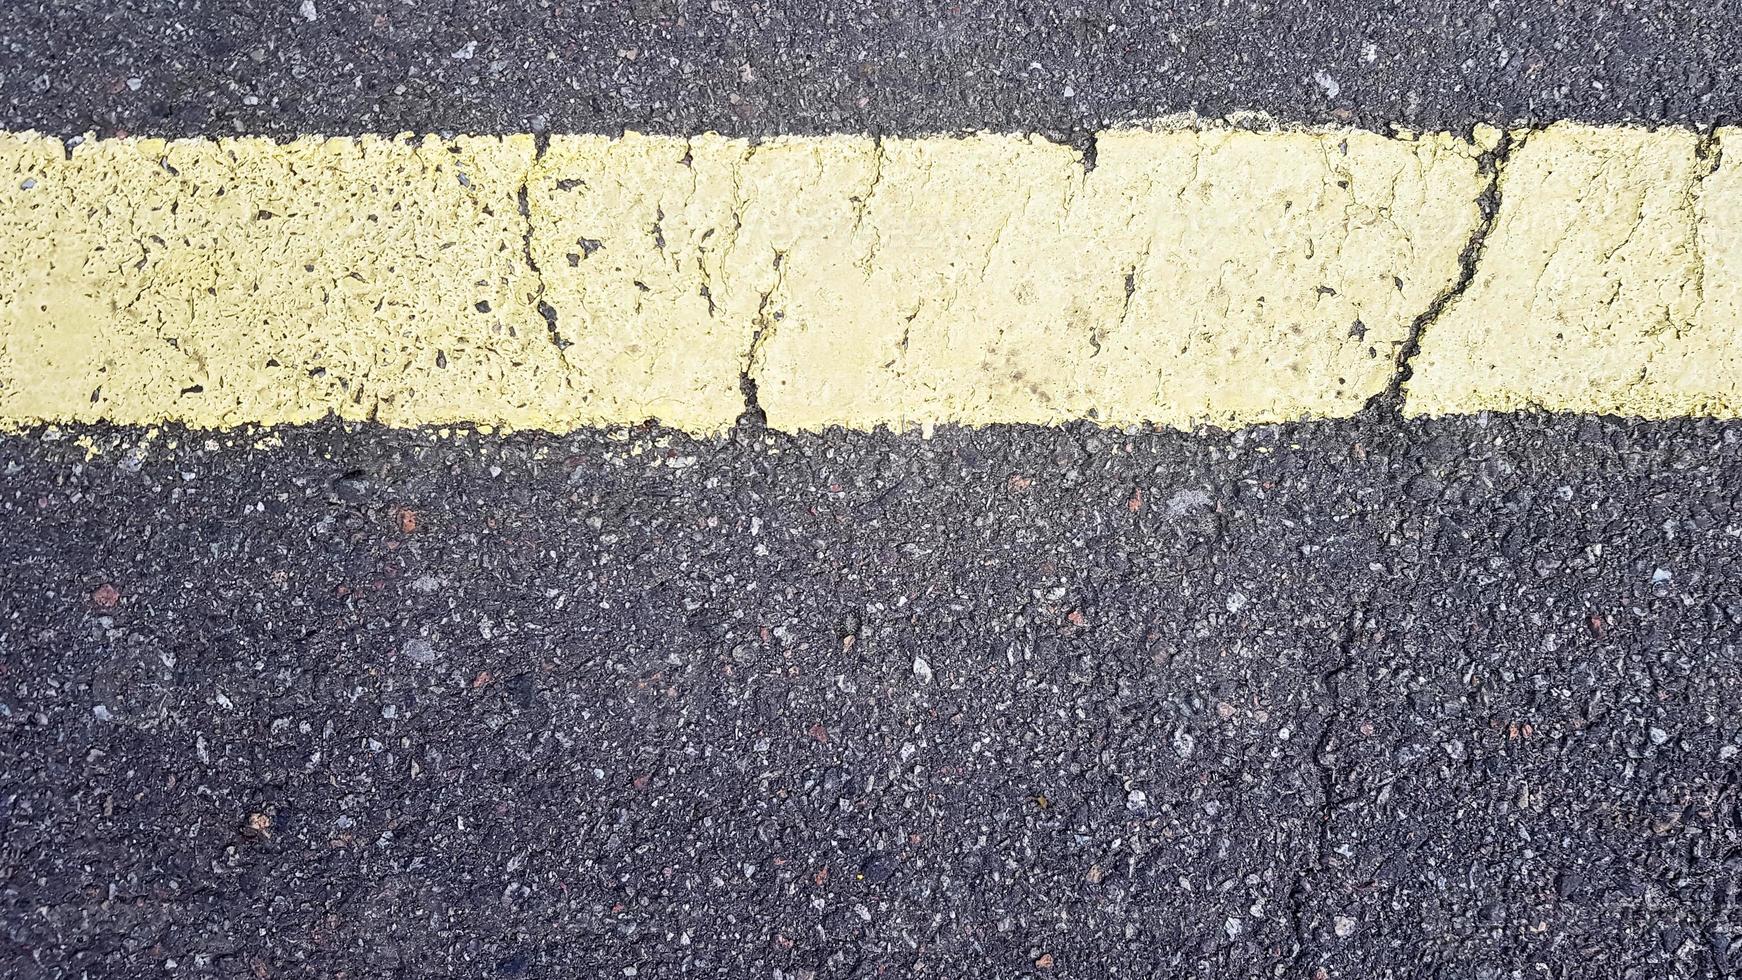 franja horizontal amarilla sobre asfalto. Detalle de una raya amarilla desgastada por el tiempo con una grieta, señalización vial sobre asfalto. foto